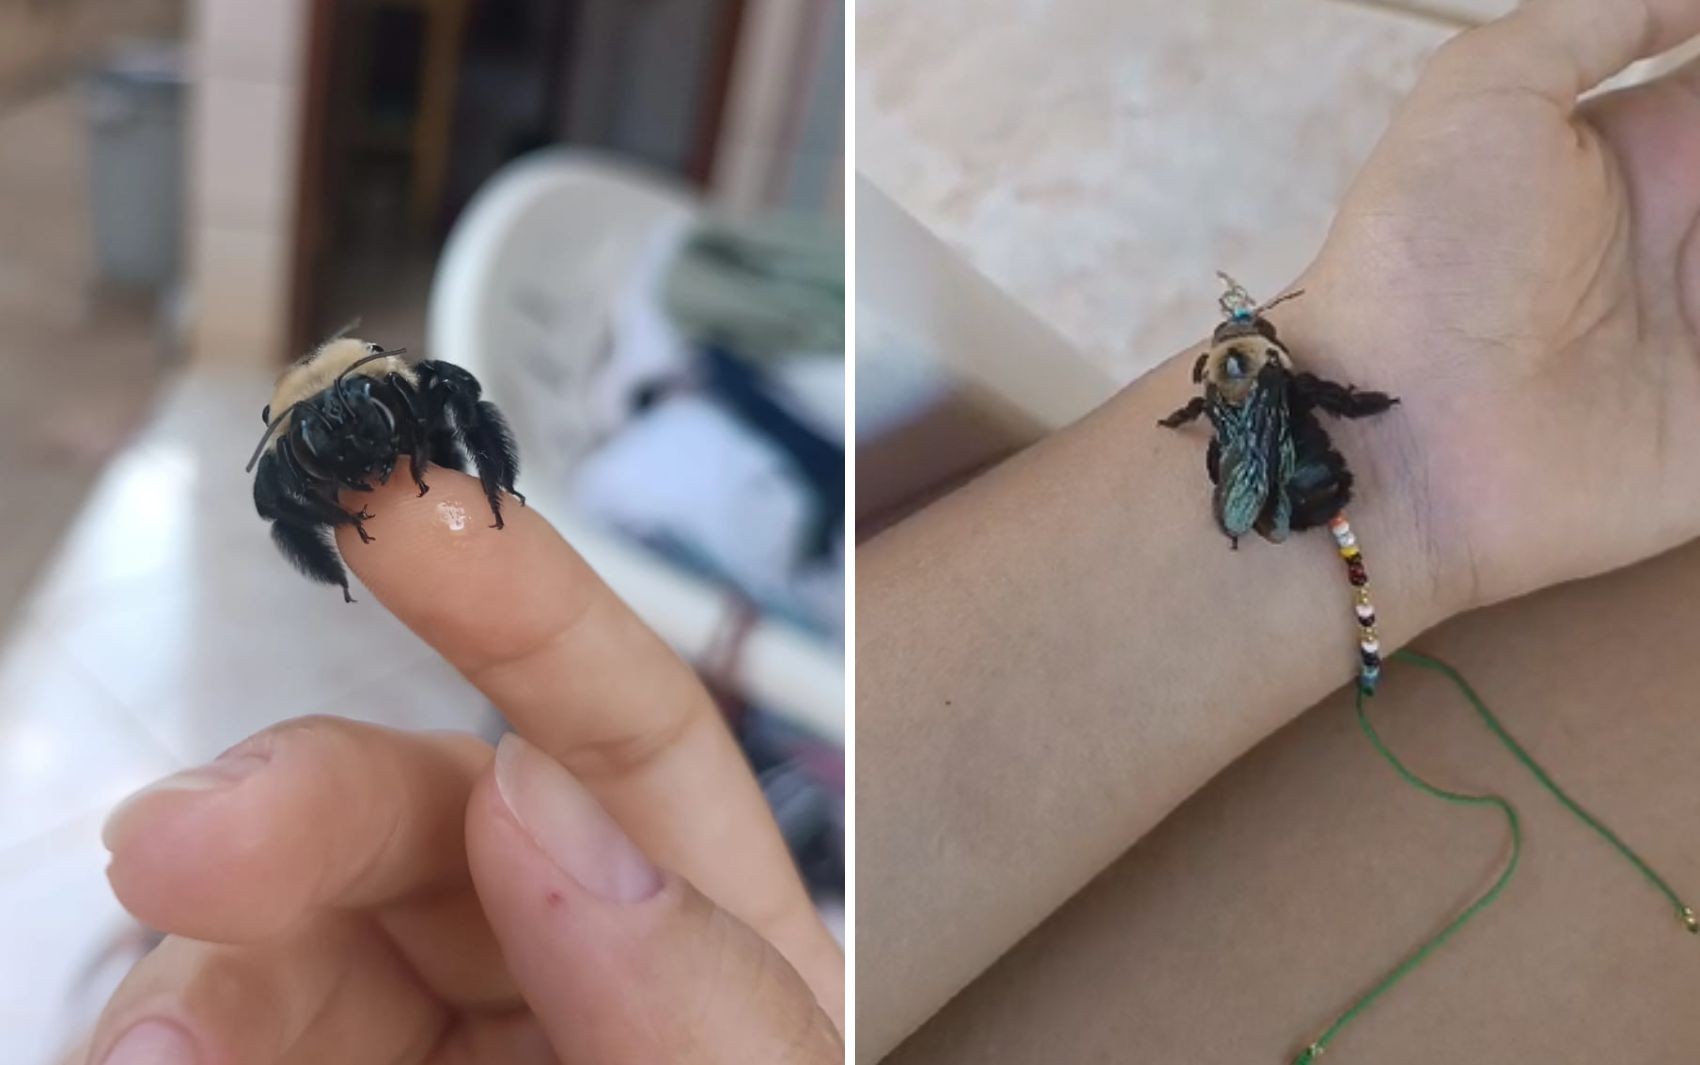 'Criamos uma conexão', diz estudante que pagou por internação de abelha em clínica veterinária de Goiânia